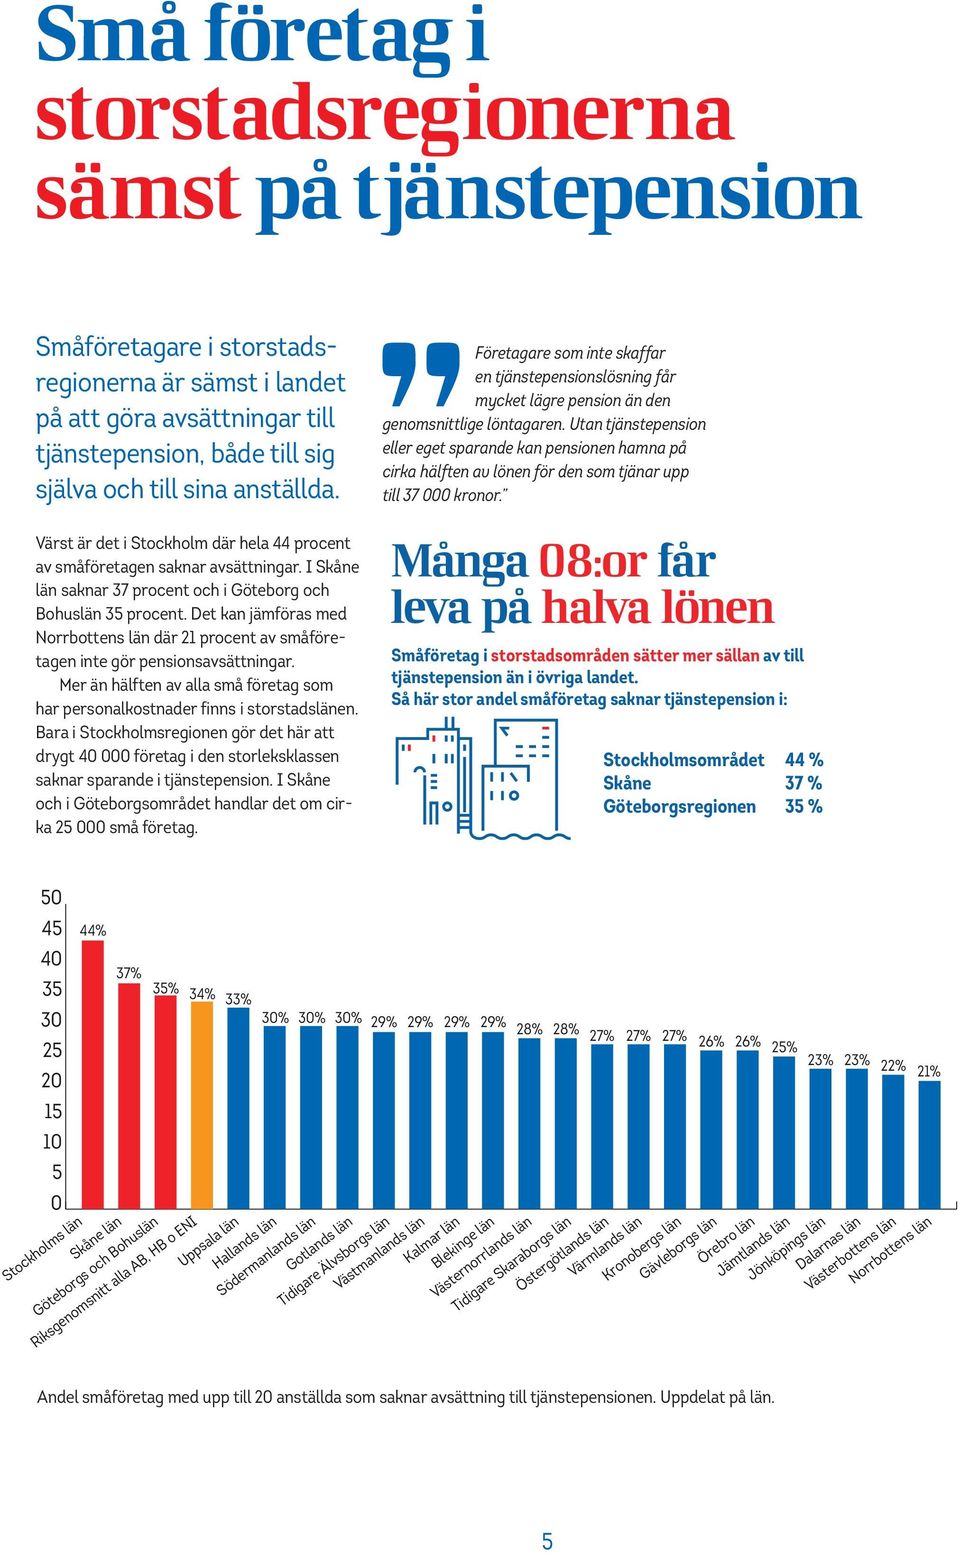 Det kan jämföras med Norrbottens län där 21 procent av småföretagen inte gör pensionsavsättningar. Mer än hälften av alla små företag som har personalkostnader finns i storstadslänen.